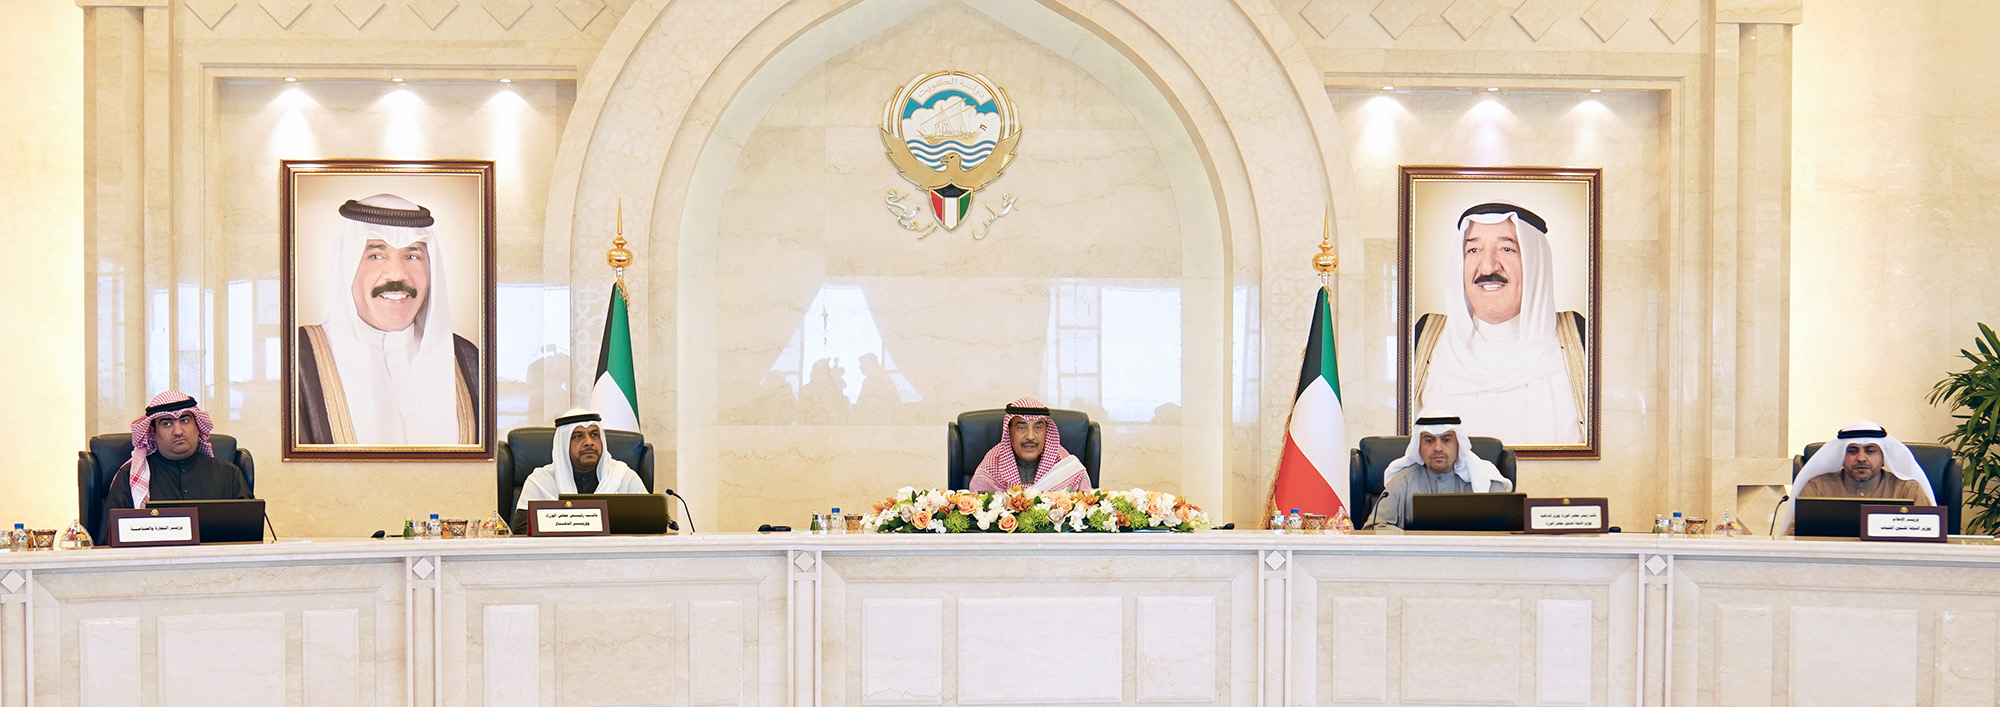 تكليفات بالقضاء على الفساد في أول جلسة لوزراء الكويت